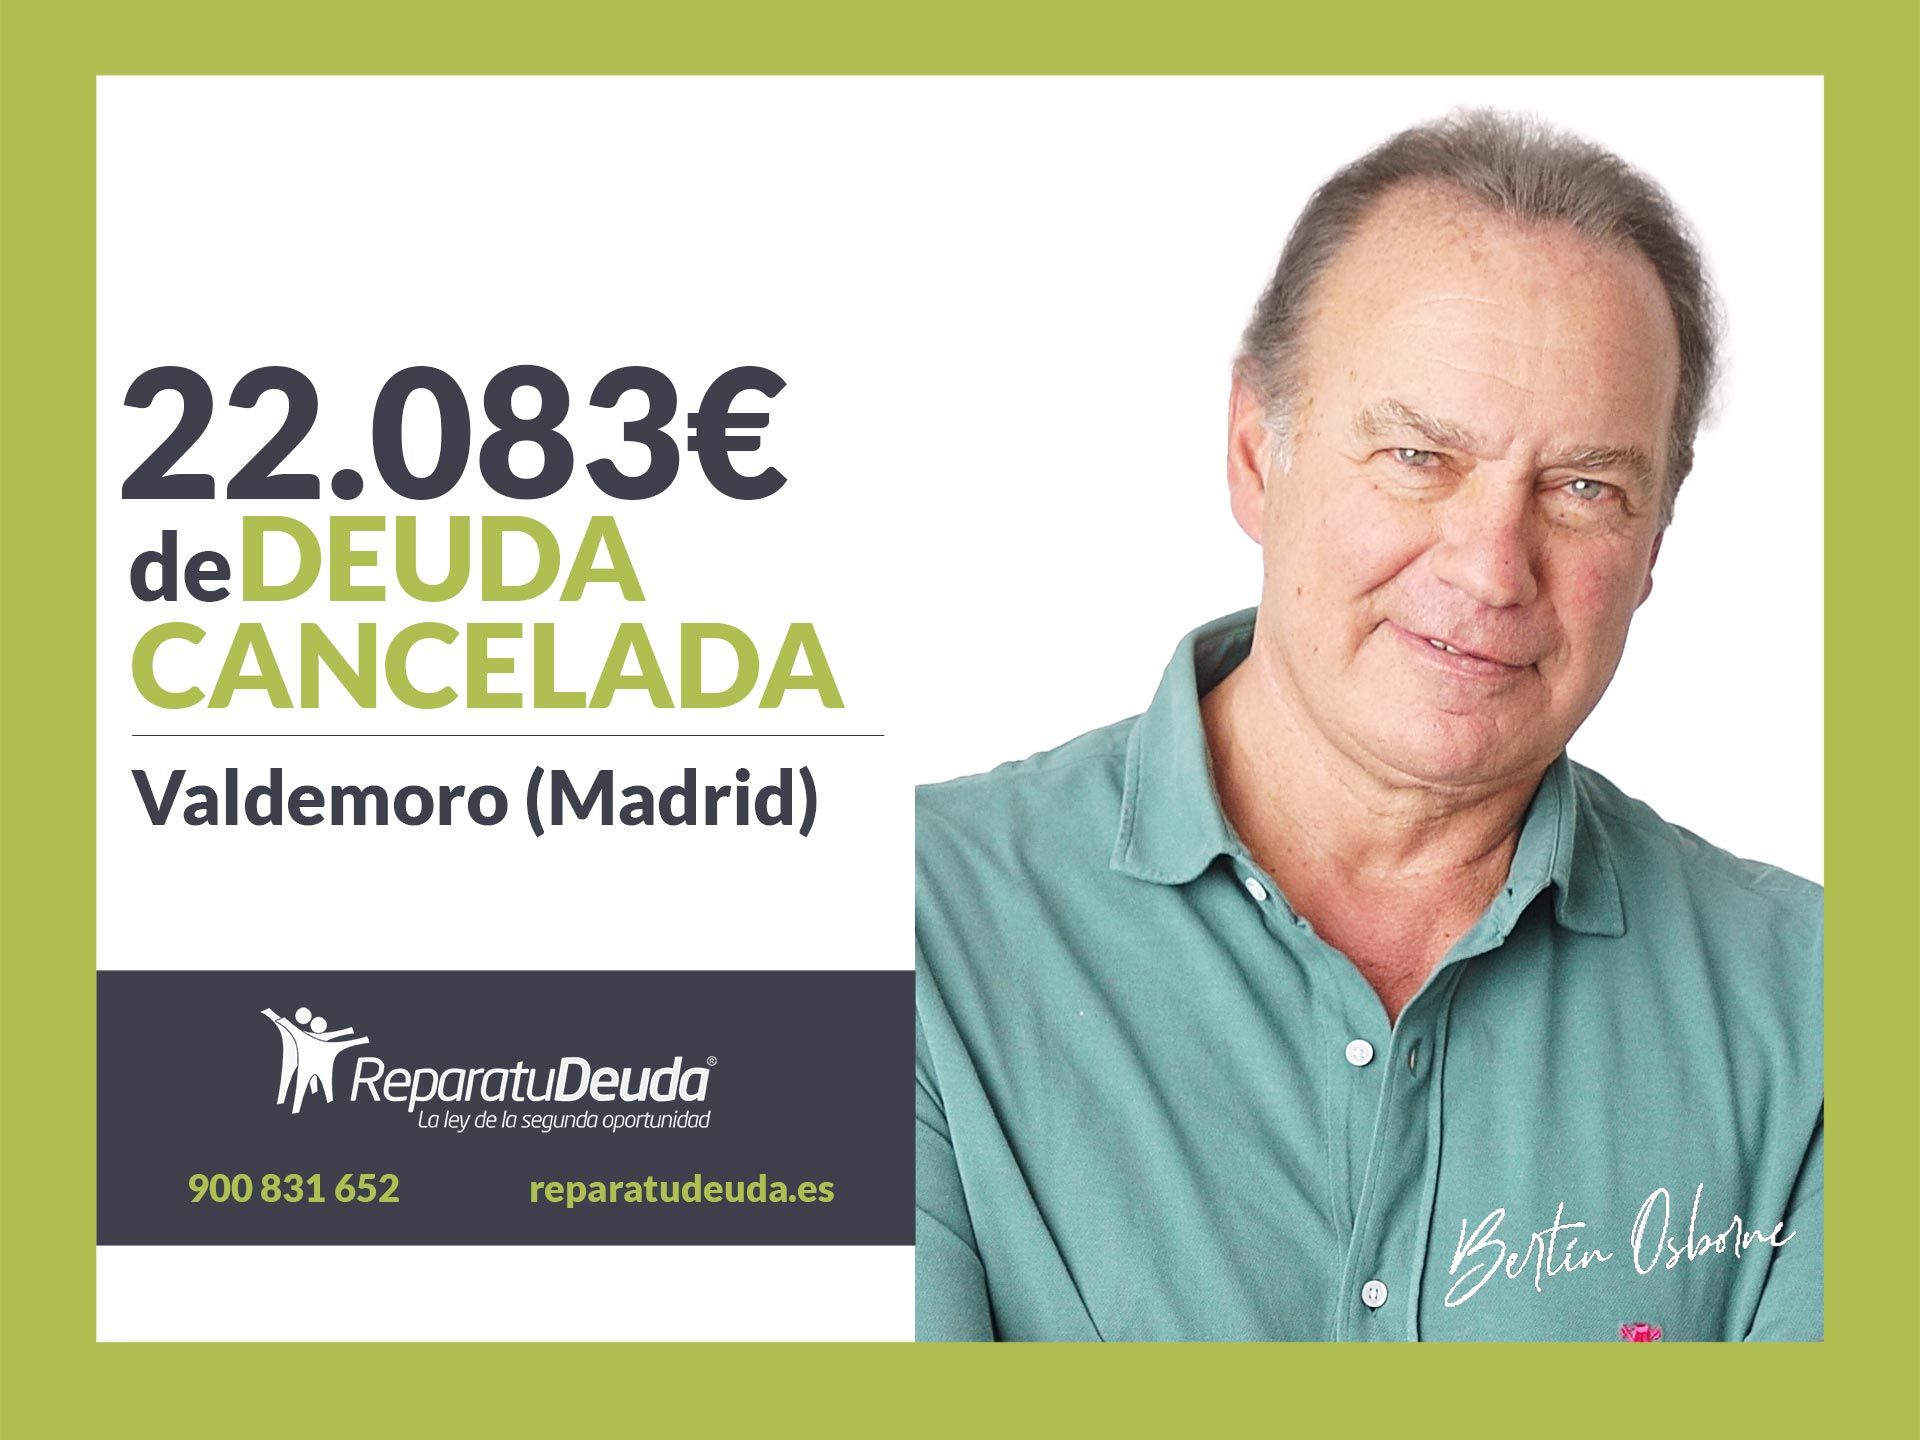 Repara tu Deuda Abogados cancela 22.083 ? en Valdemoro (Madrid) con la Ley de Segunda Oportunidad